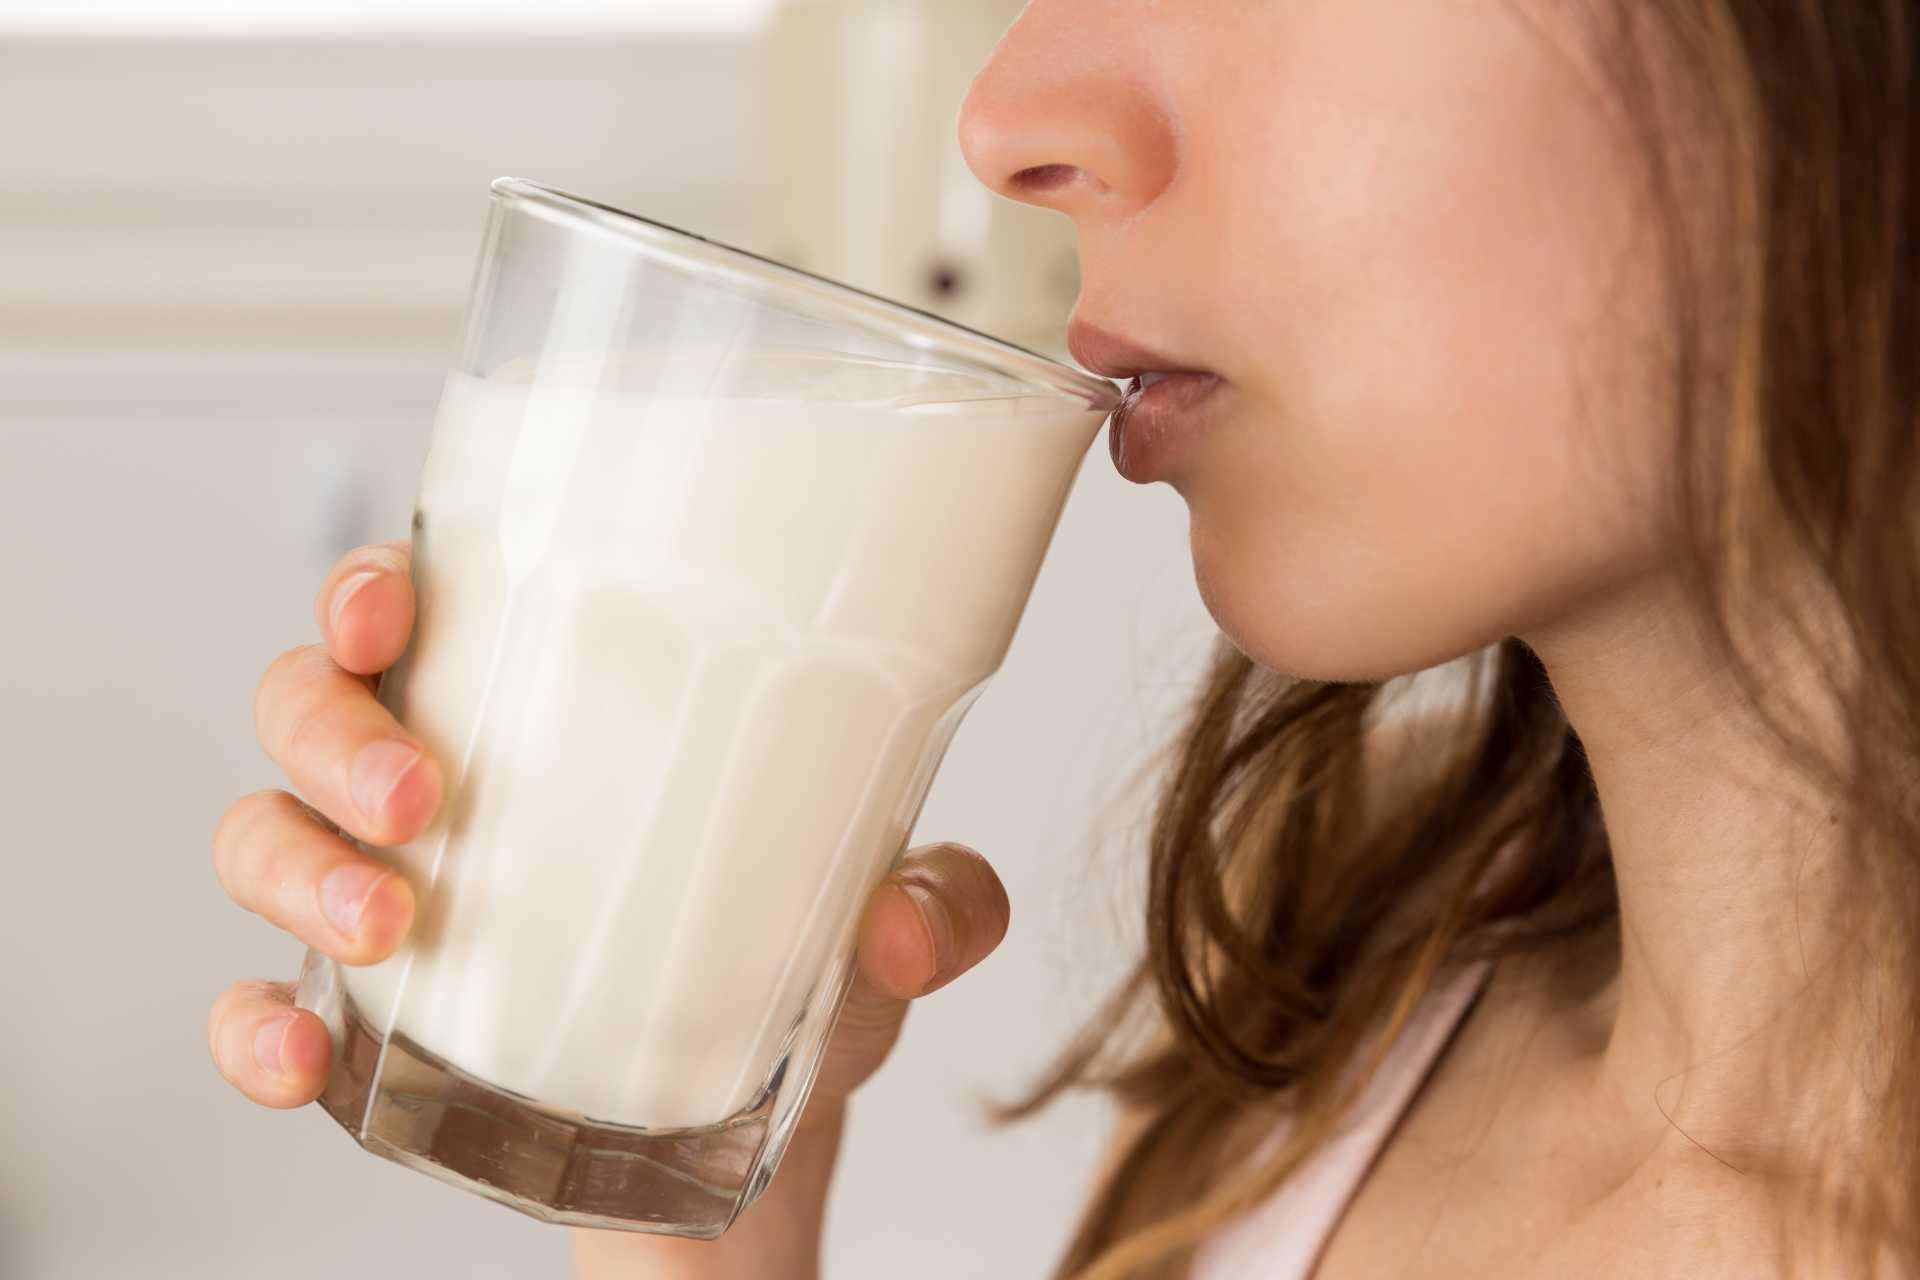 दूध पीते समय कभी भूलकर भी ना करे इस चीज का सेवन, वरना हो जायेगी बीमारी